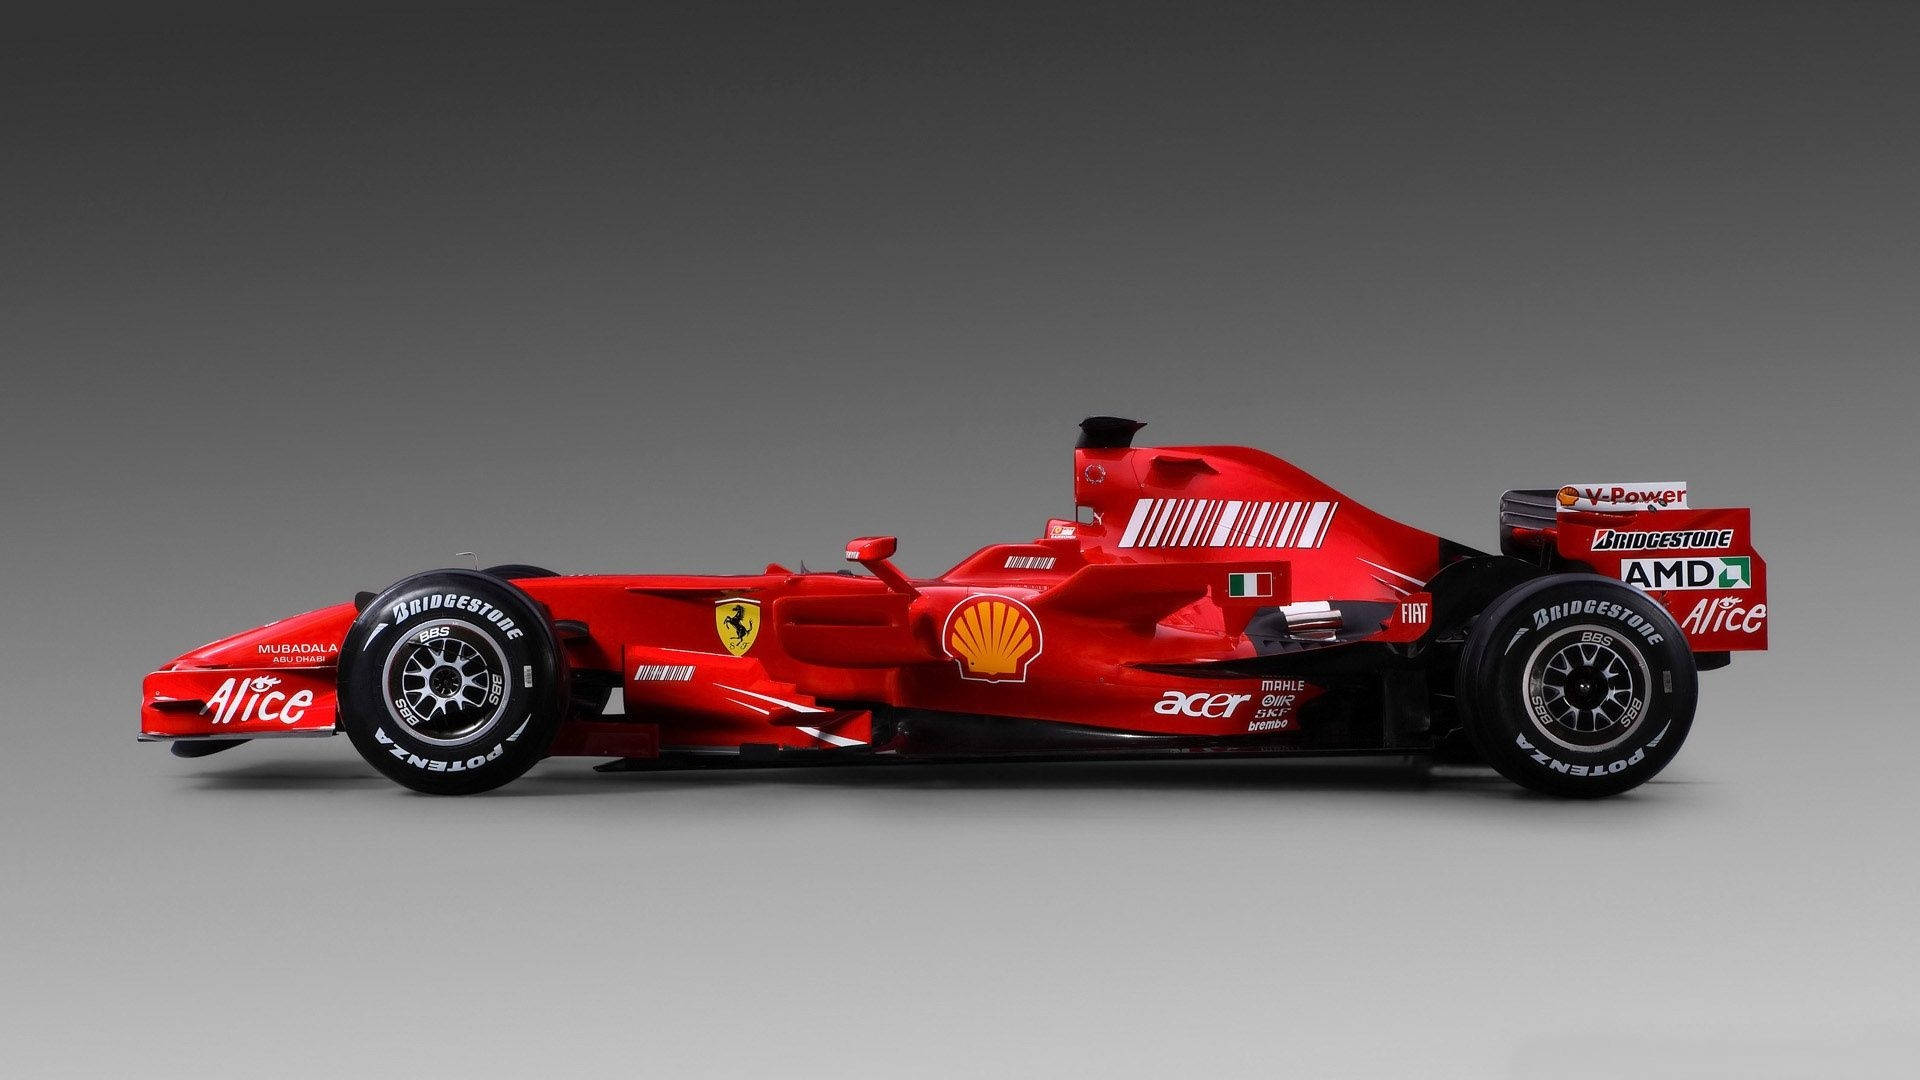 Ferrarif1-bil Bakgrundsbild. Wallpaper